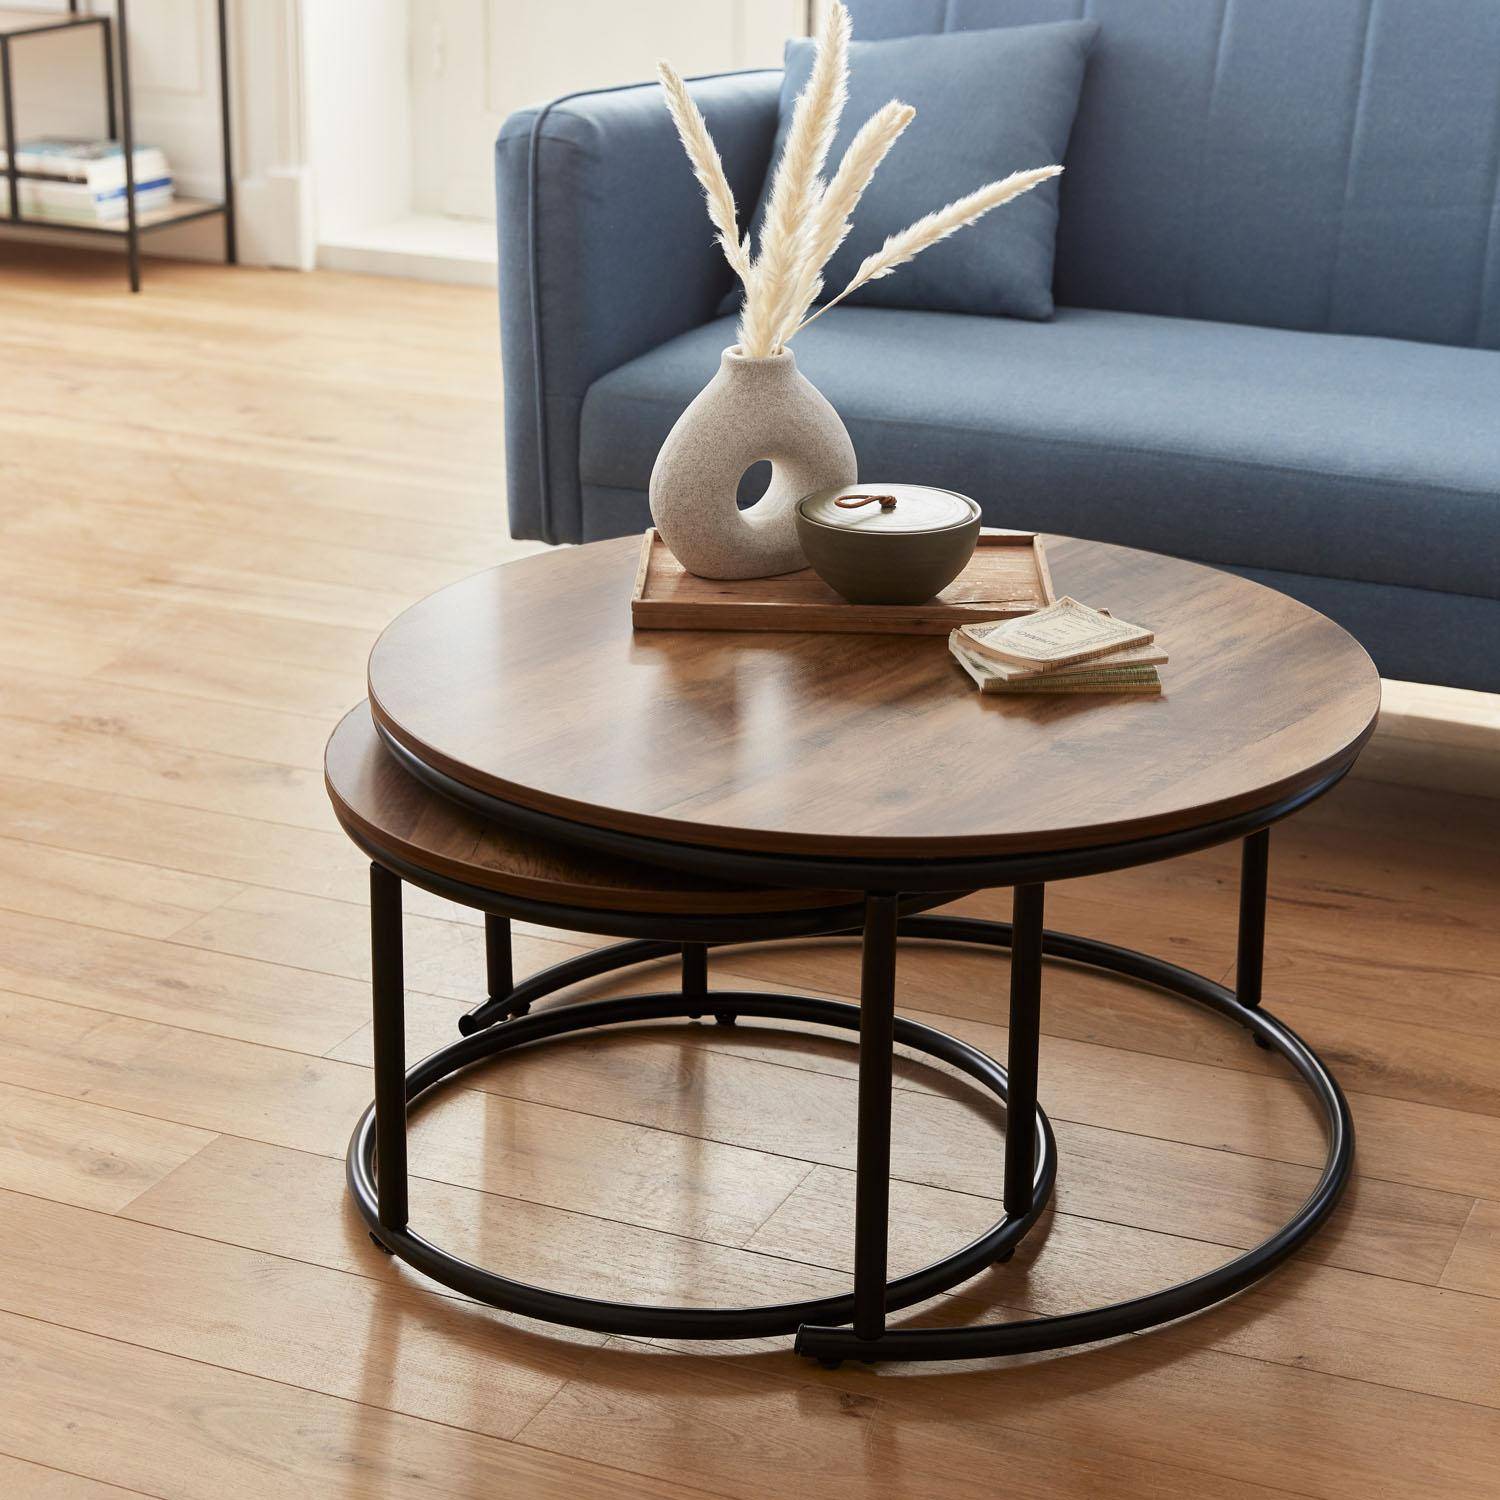 Set 2 ronde inschuifbare lage tafels van zwart metaal en een blad met houtlook, 1x Ø77xh40cm / x1 Ø57xh35cm,sweeek,Photo3